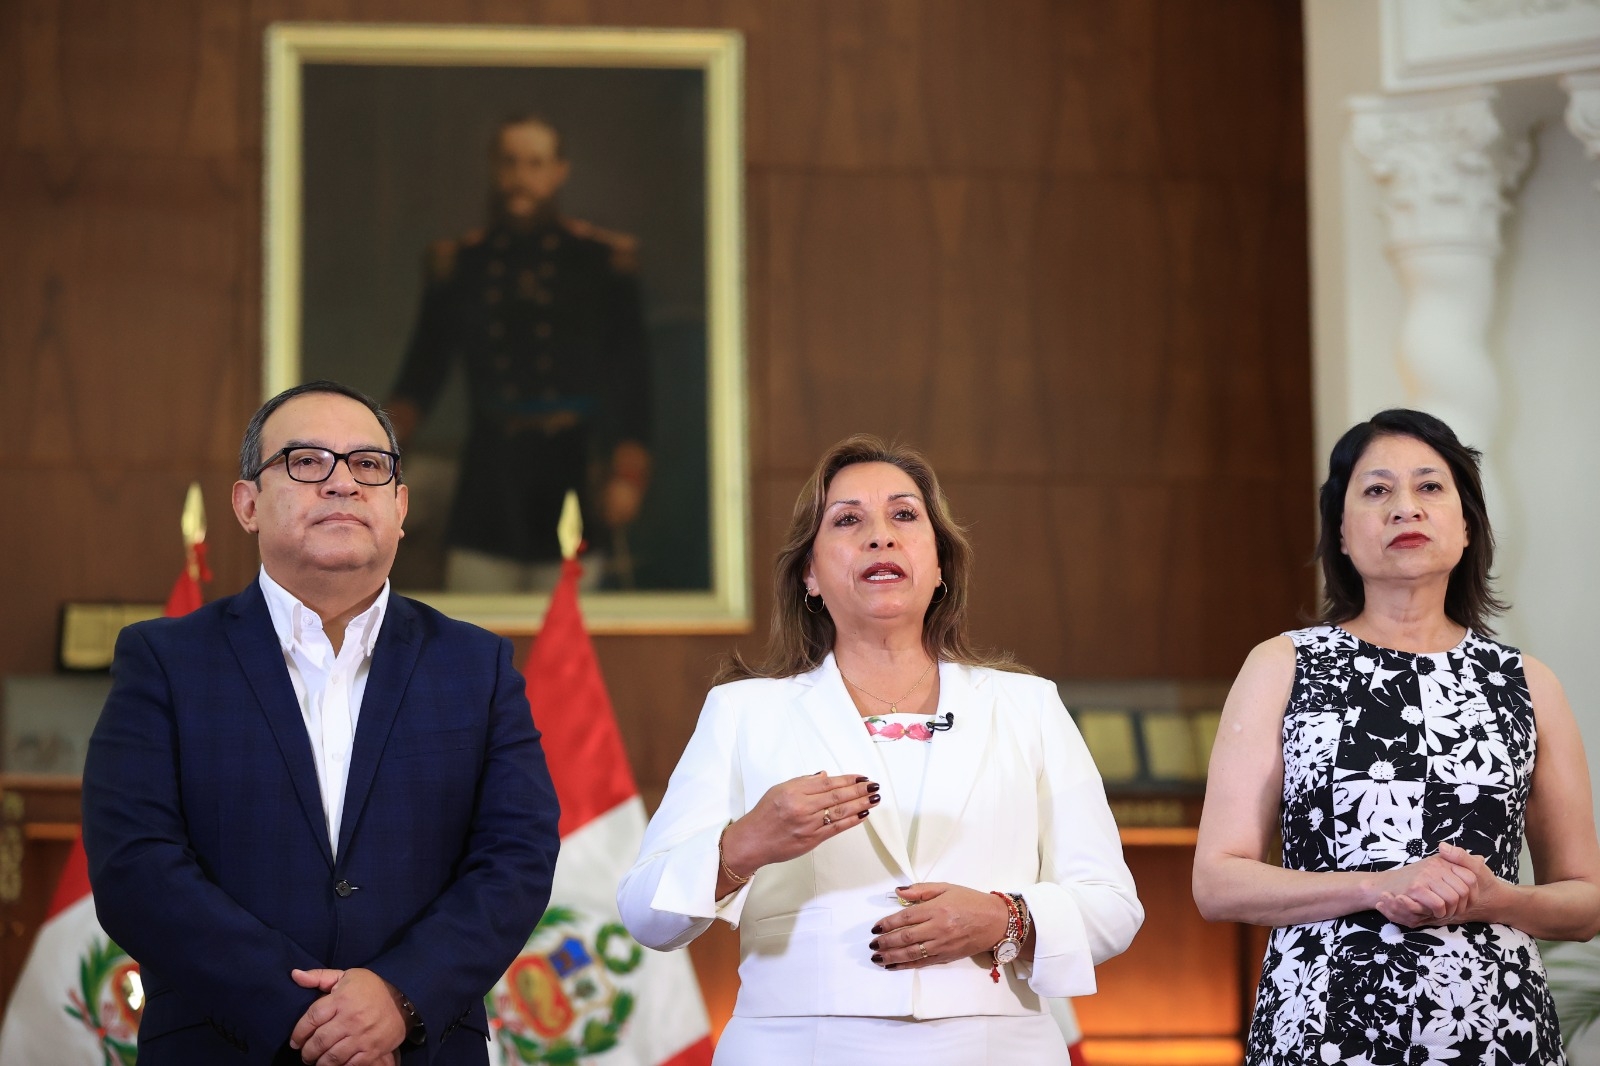 El Gobierno de Perú ha dispuesto el retiro definitivo de su embajador en los Estados Unidos Mexicanos